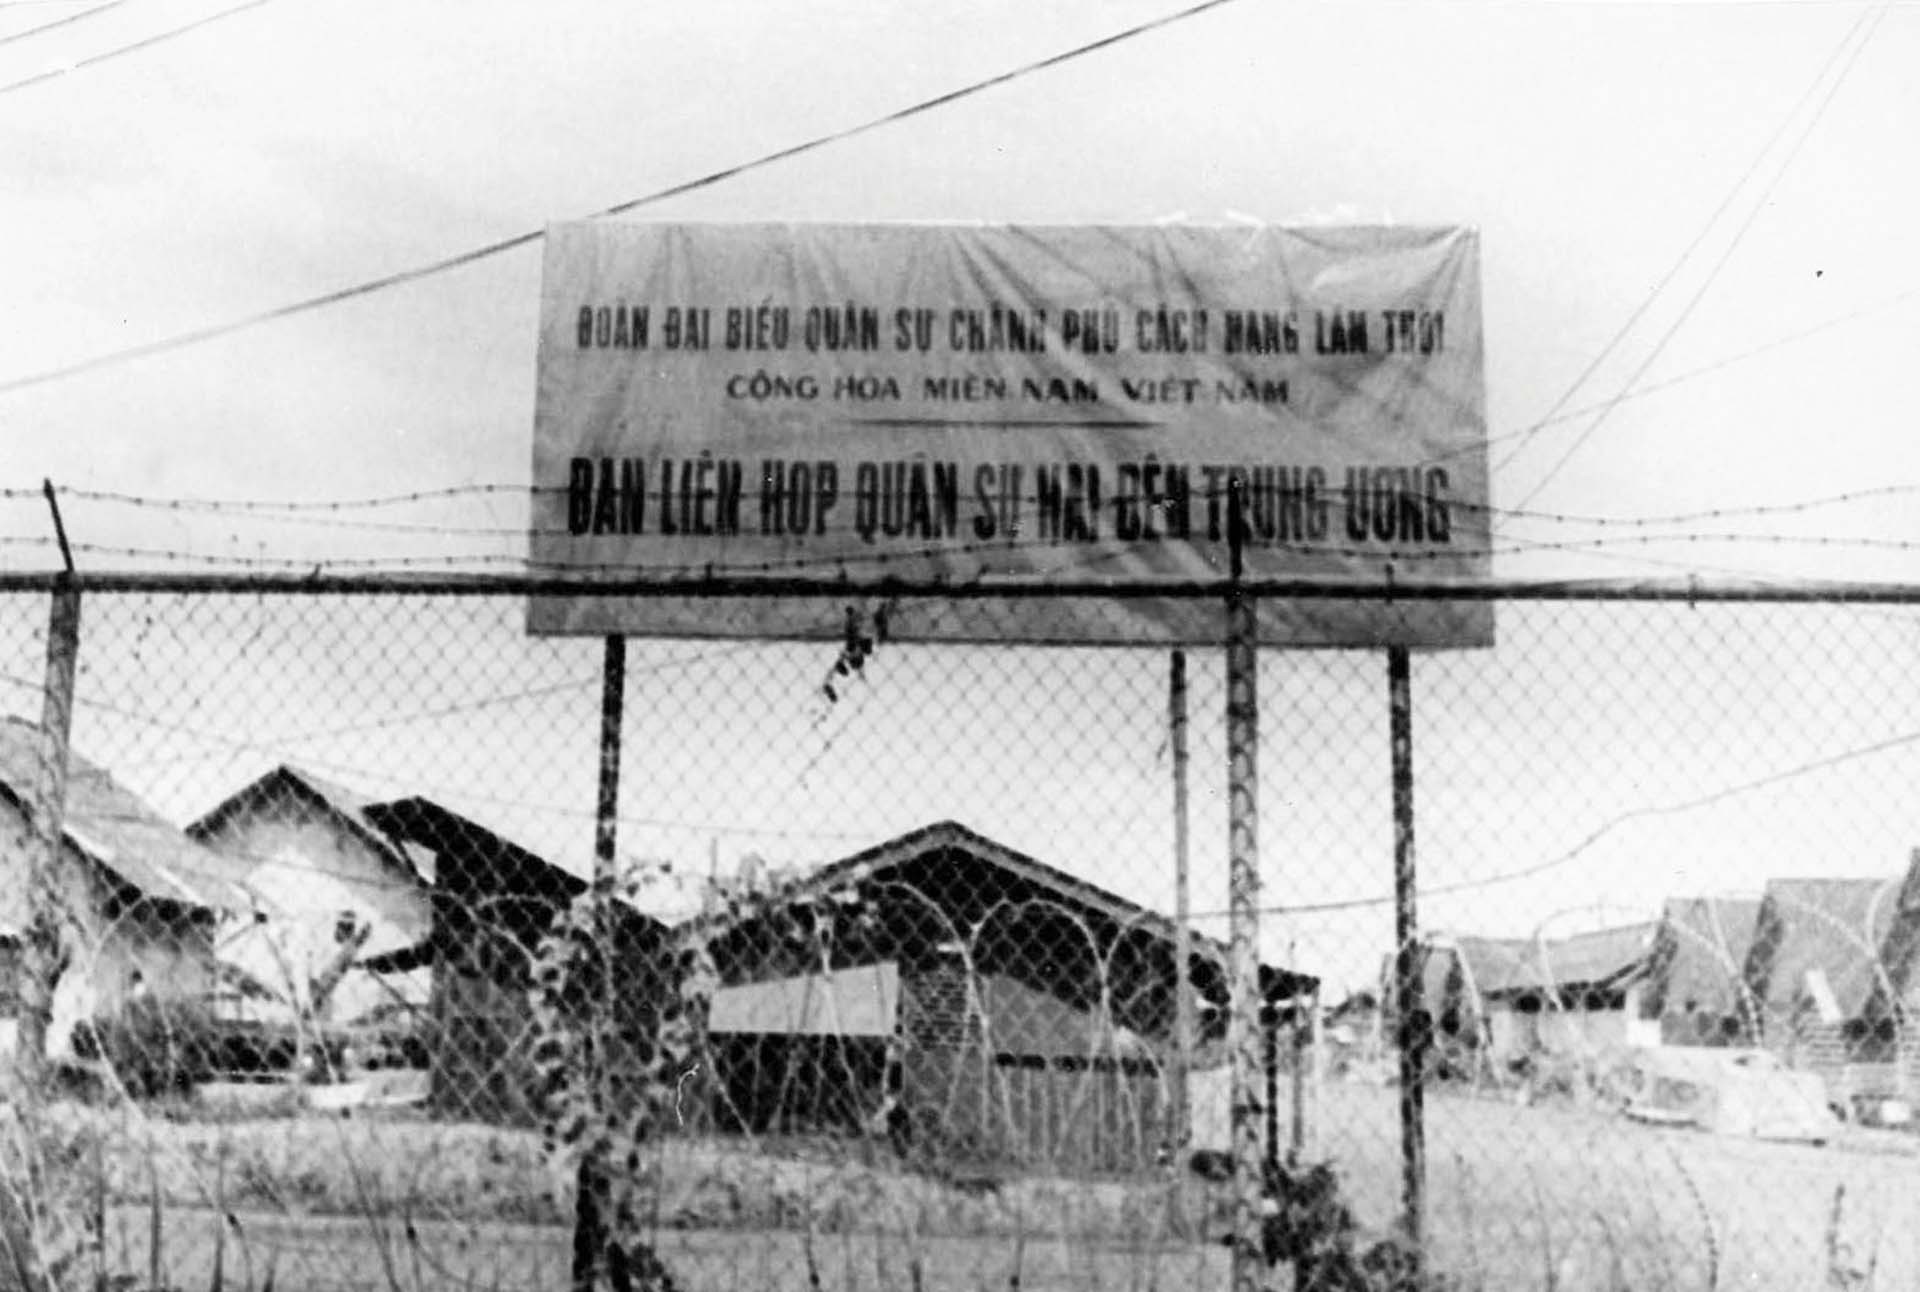 Tấm biển đề dòng chữ “Đoàn Đại biểu Chính phủ Cách mạng Lâm thời Cộng hòa miền Nam Việt Nam, Ban Liên hợp quân sự  hai bên Trung ương” đặt bên trong hàng rào kẽm gai gần cổng Trại Davis.